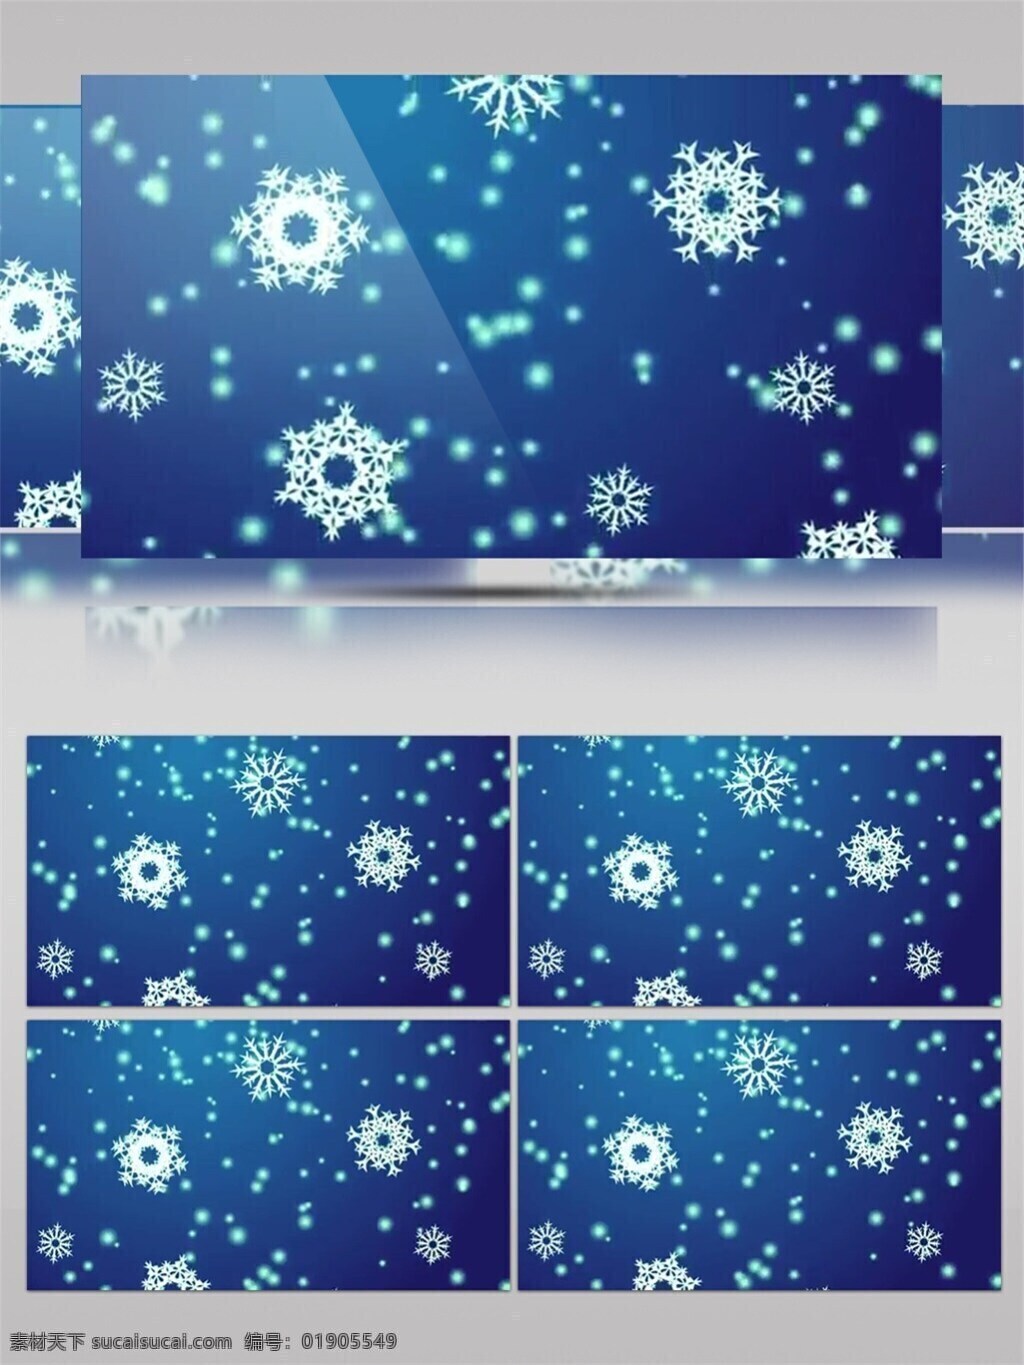 蓝色 雪花 背景 圣诞节 视频 华丽蓝色 节日壁纸 节日 特效 圣诞节庆祝 炫酷背景 雪花图案